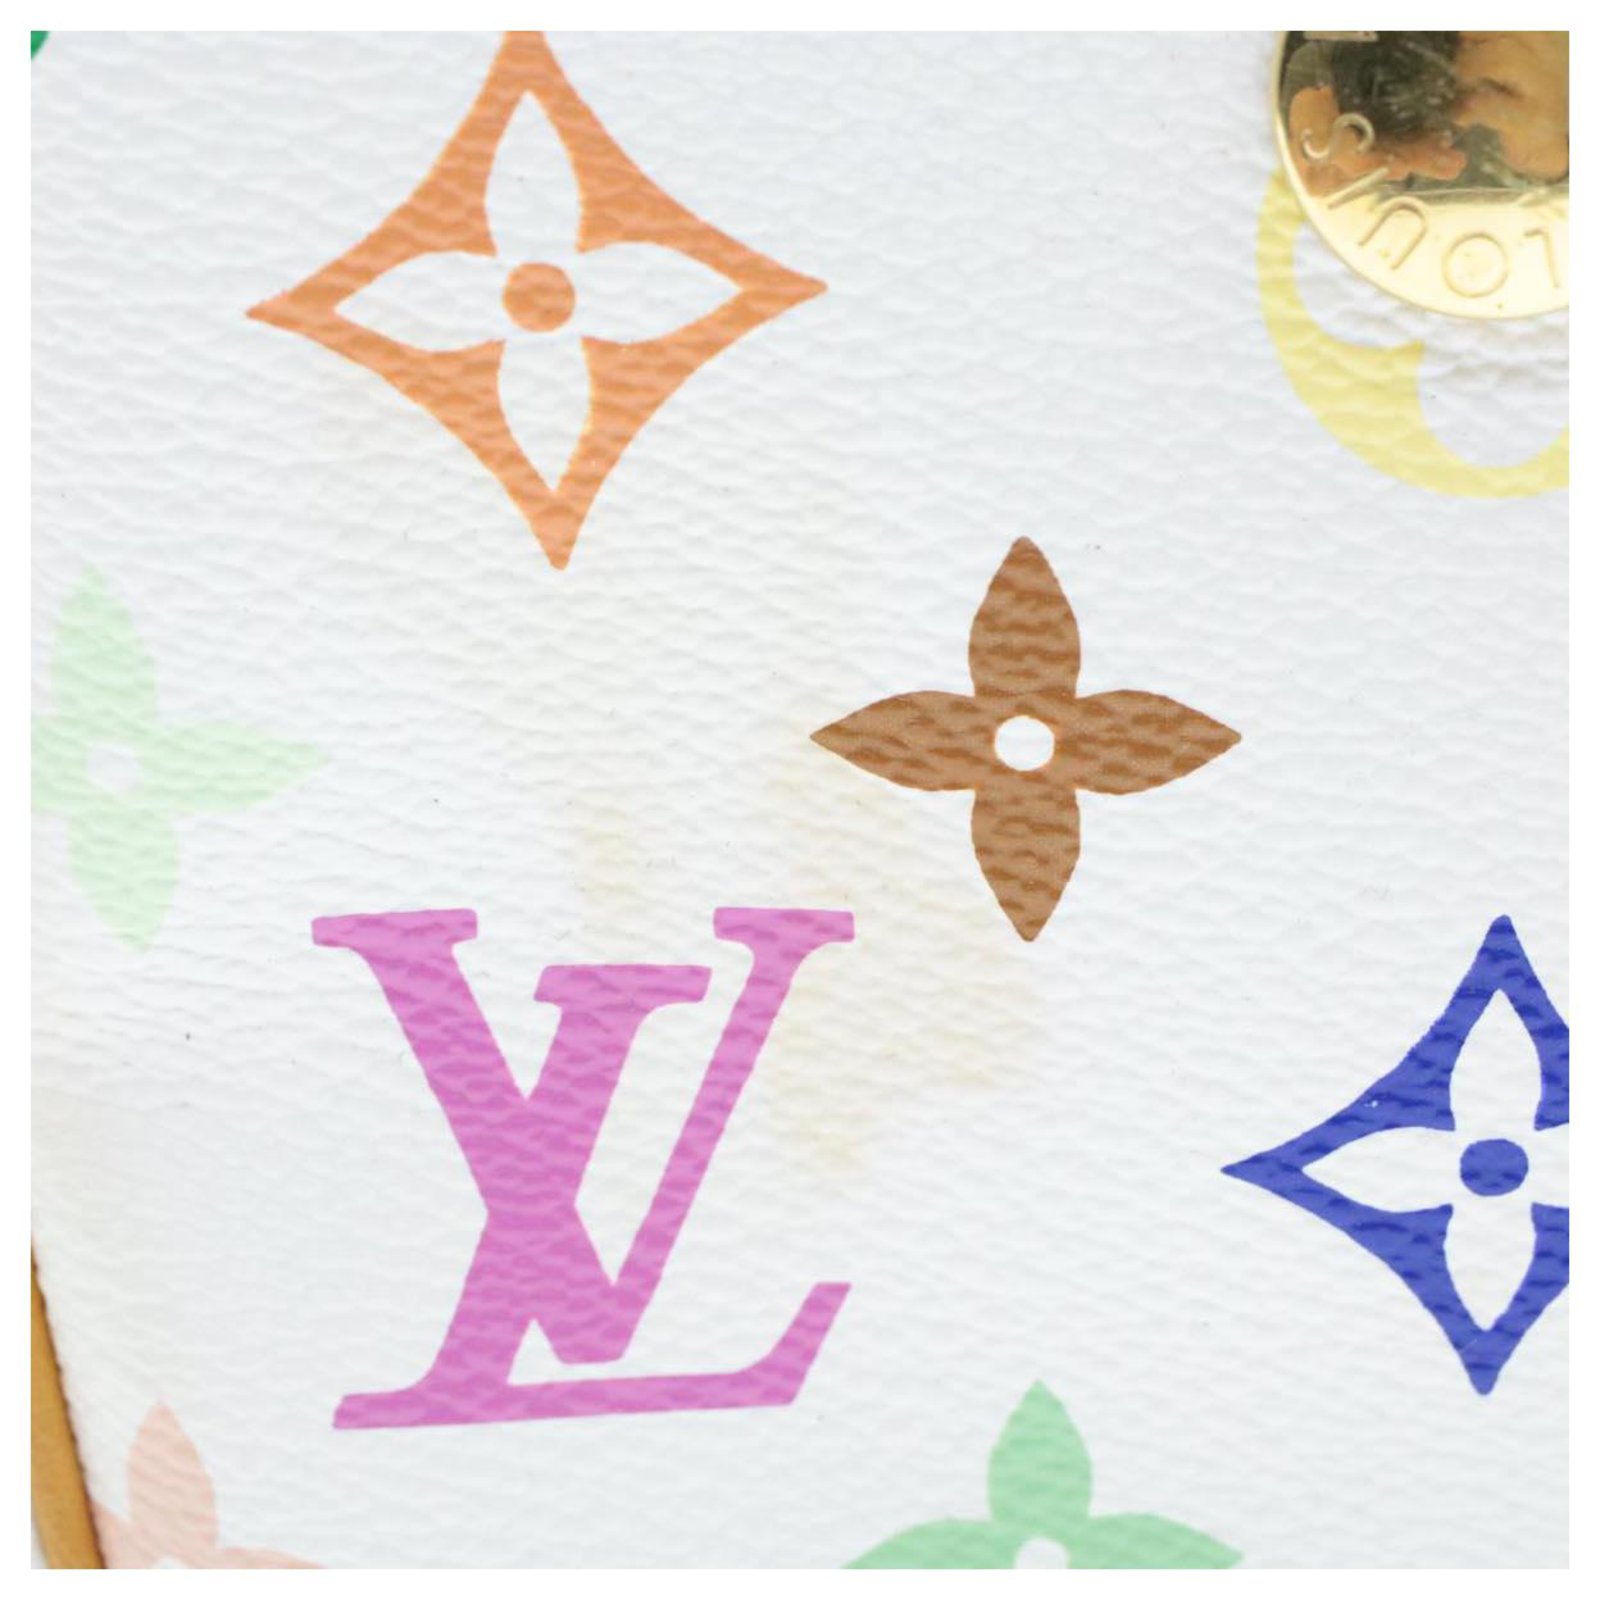 Auth Louis Vuitton Monogram Multicolor Rift Shoulder Bag White